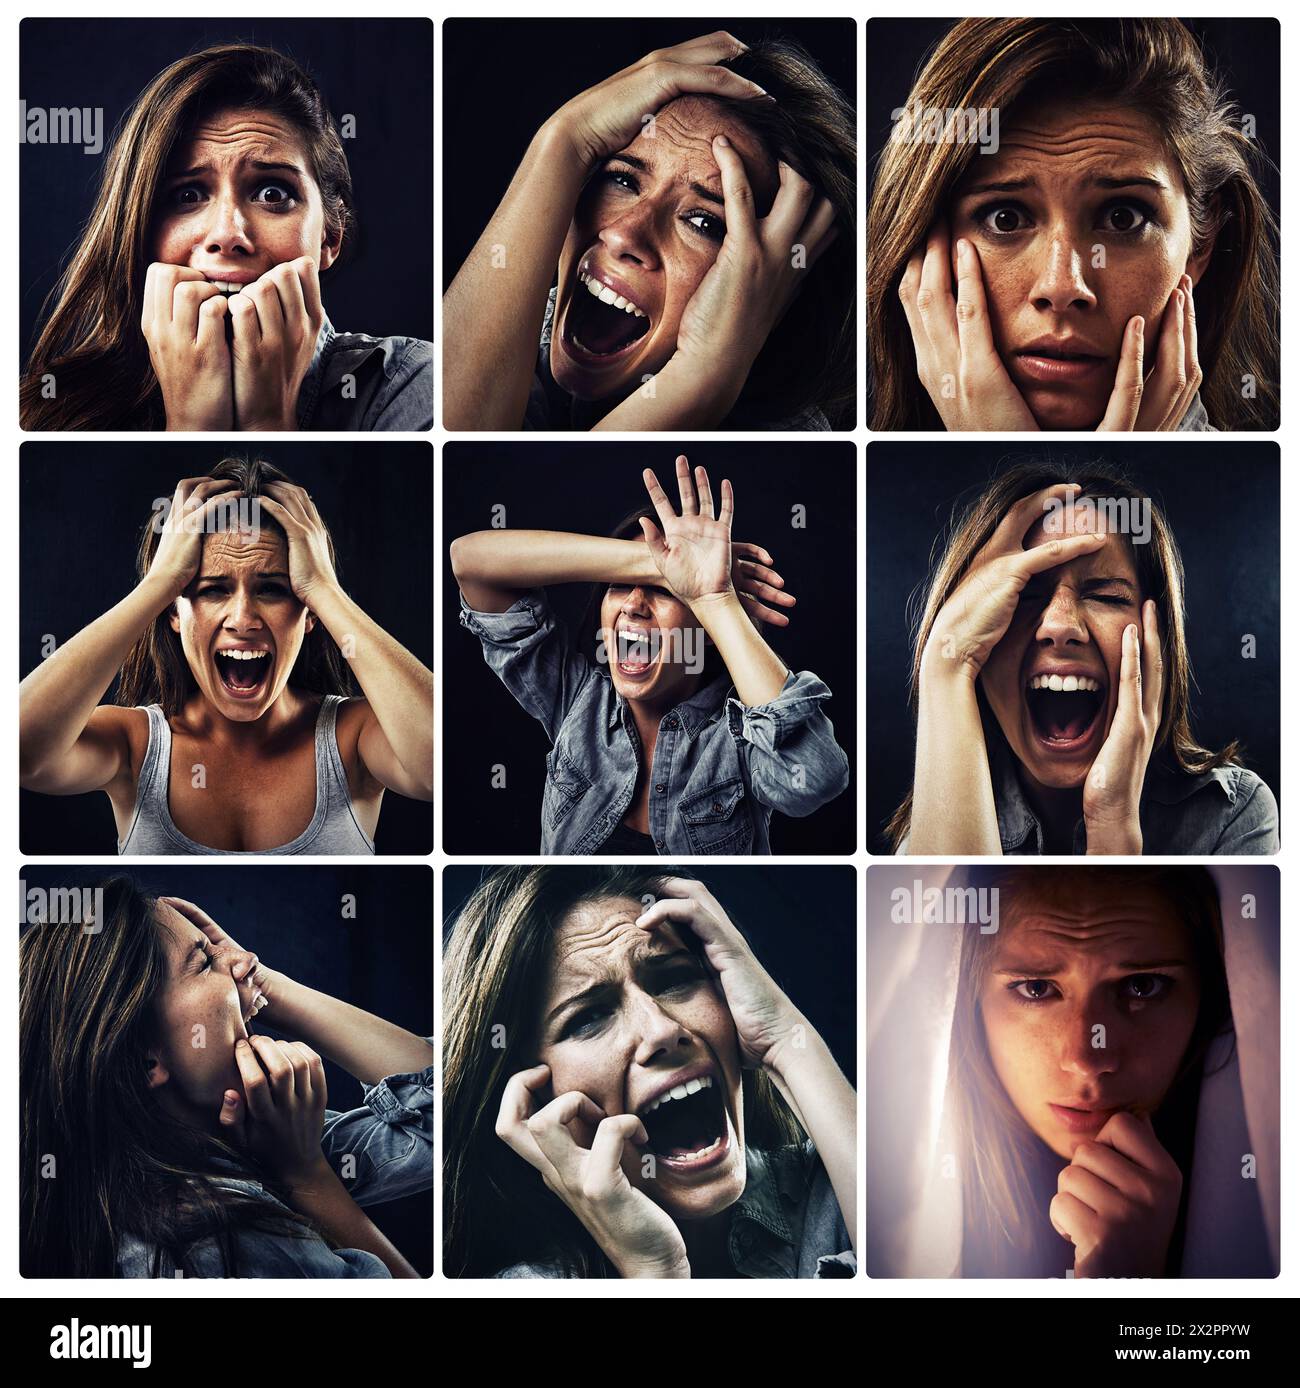 Verängstigte Frau, schreiend und Hand an Gesicht in Collage für Angst, Angst und psychische Gesundheit. Schreien, weibliche Menschen und Stress mit Kopfschmerzen des Horrors oder Stockfoto